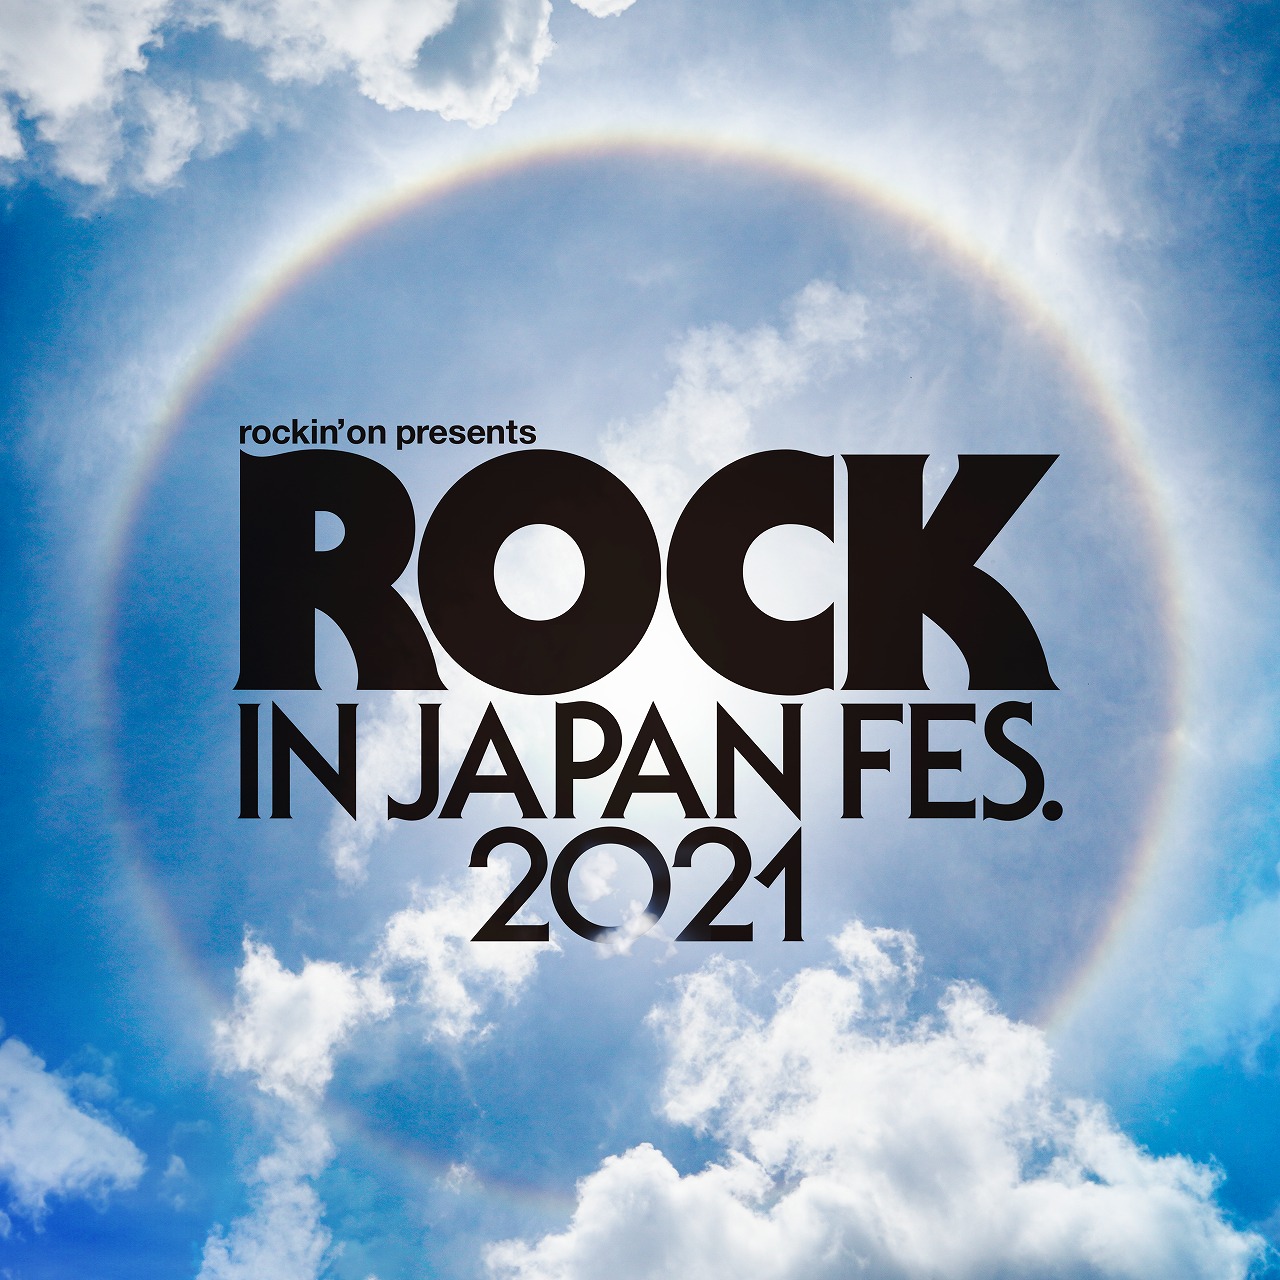 【茨城】ROCK IN JAPAN FESTIVAL 2021 (国営ひたち海浜公園) ※開催中止